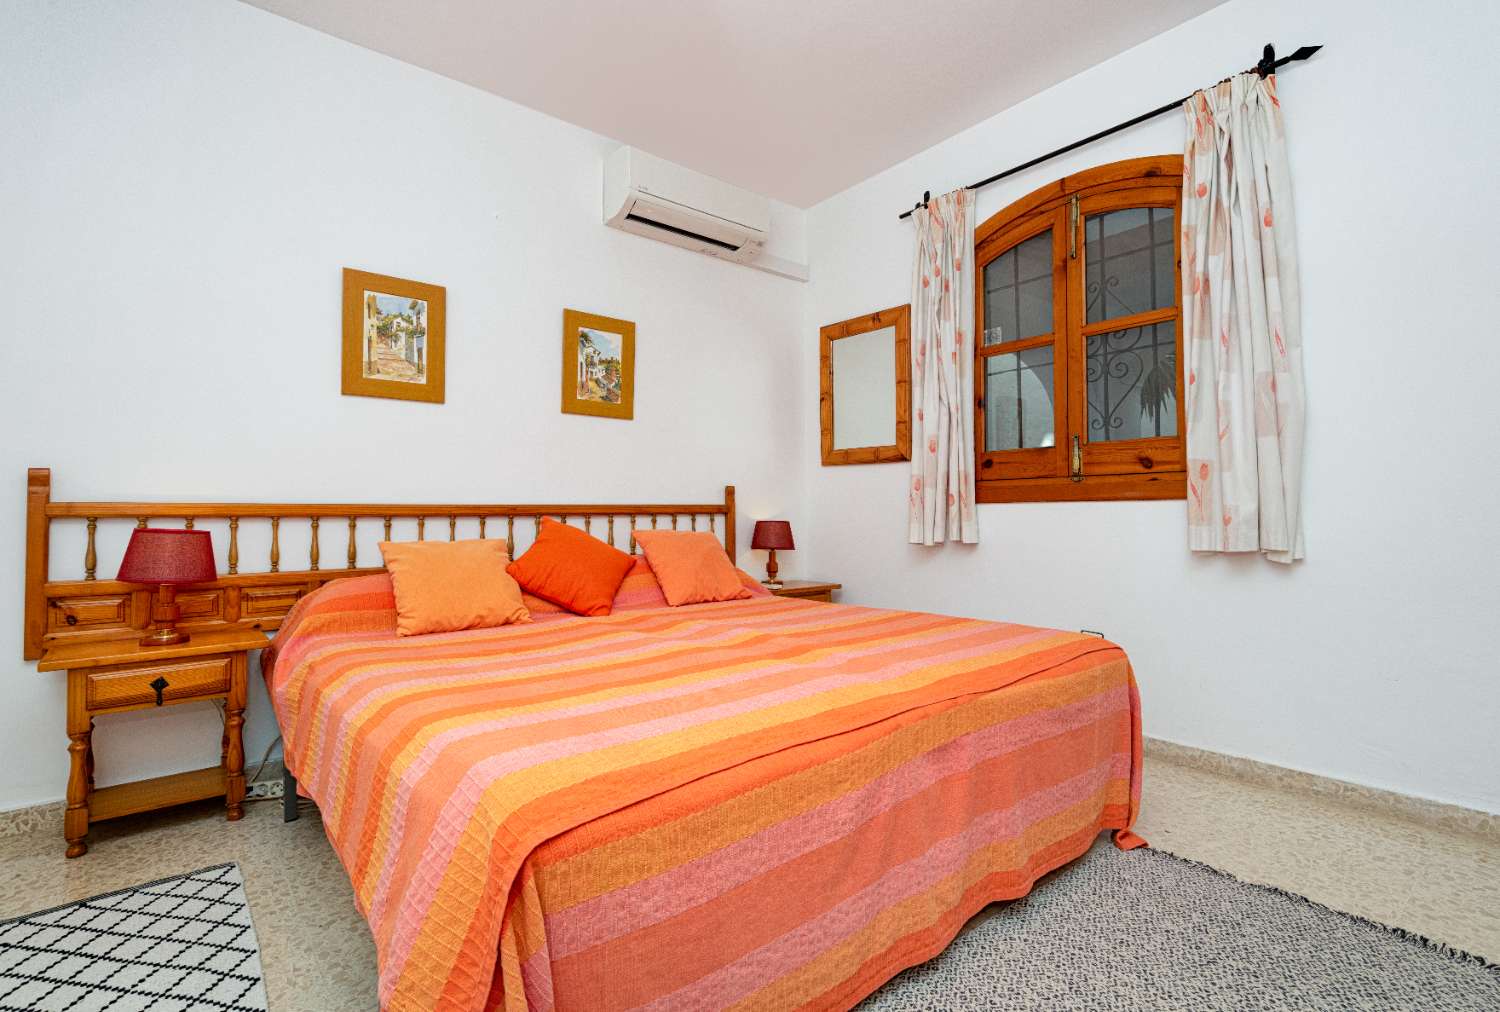 Beautiful apartment for sale in Nerja San Juan Capistrano